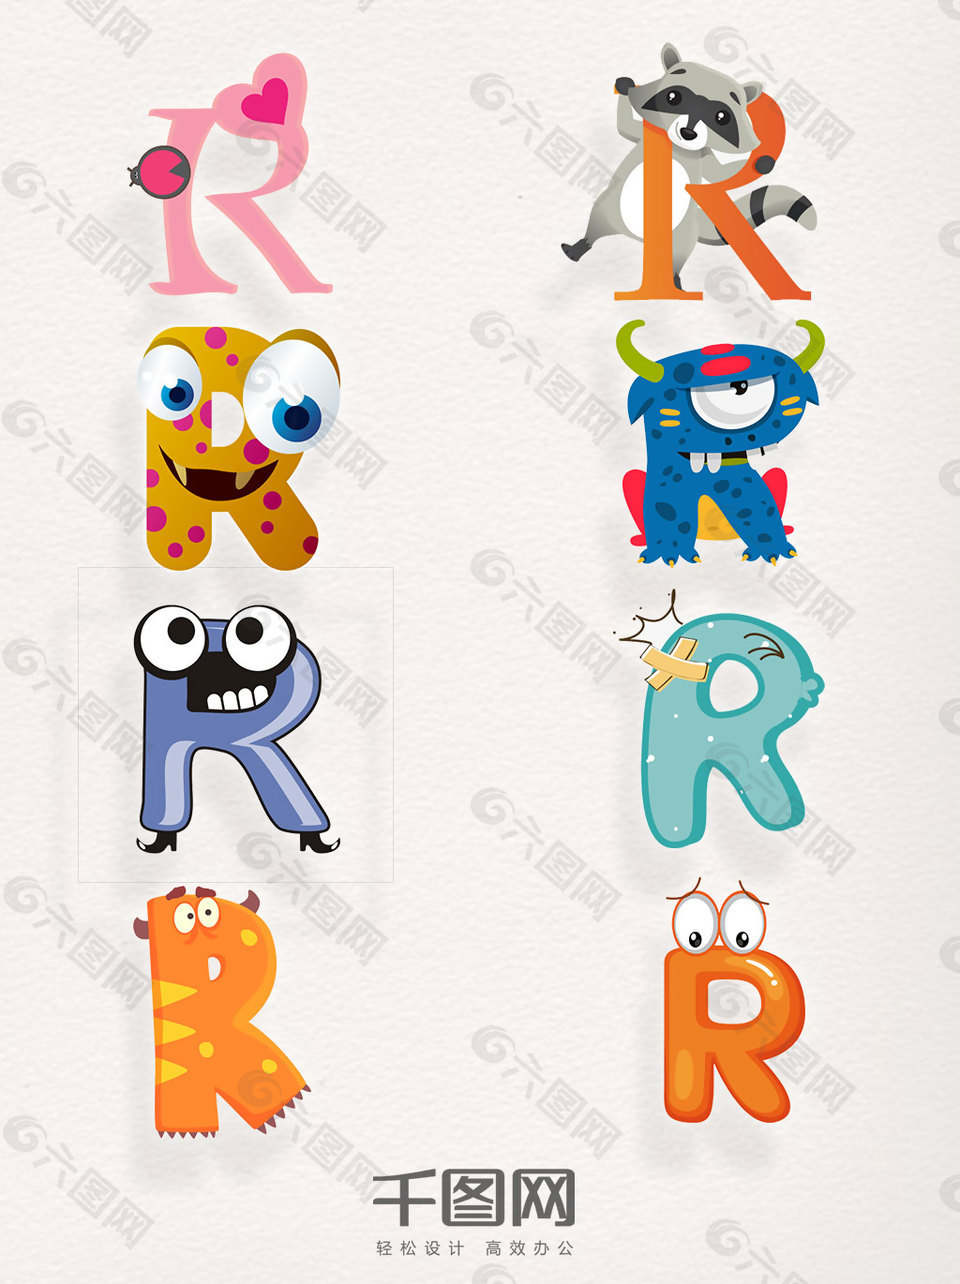 创意图案注册商标R元素字母素材卡通装饰集合